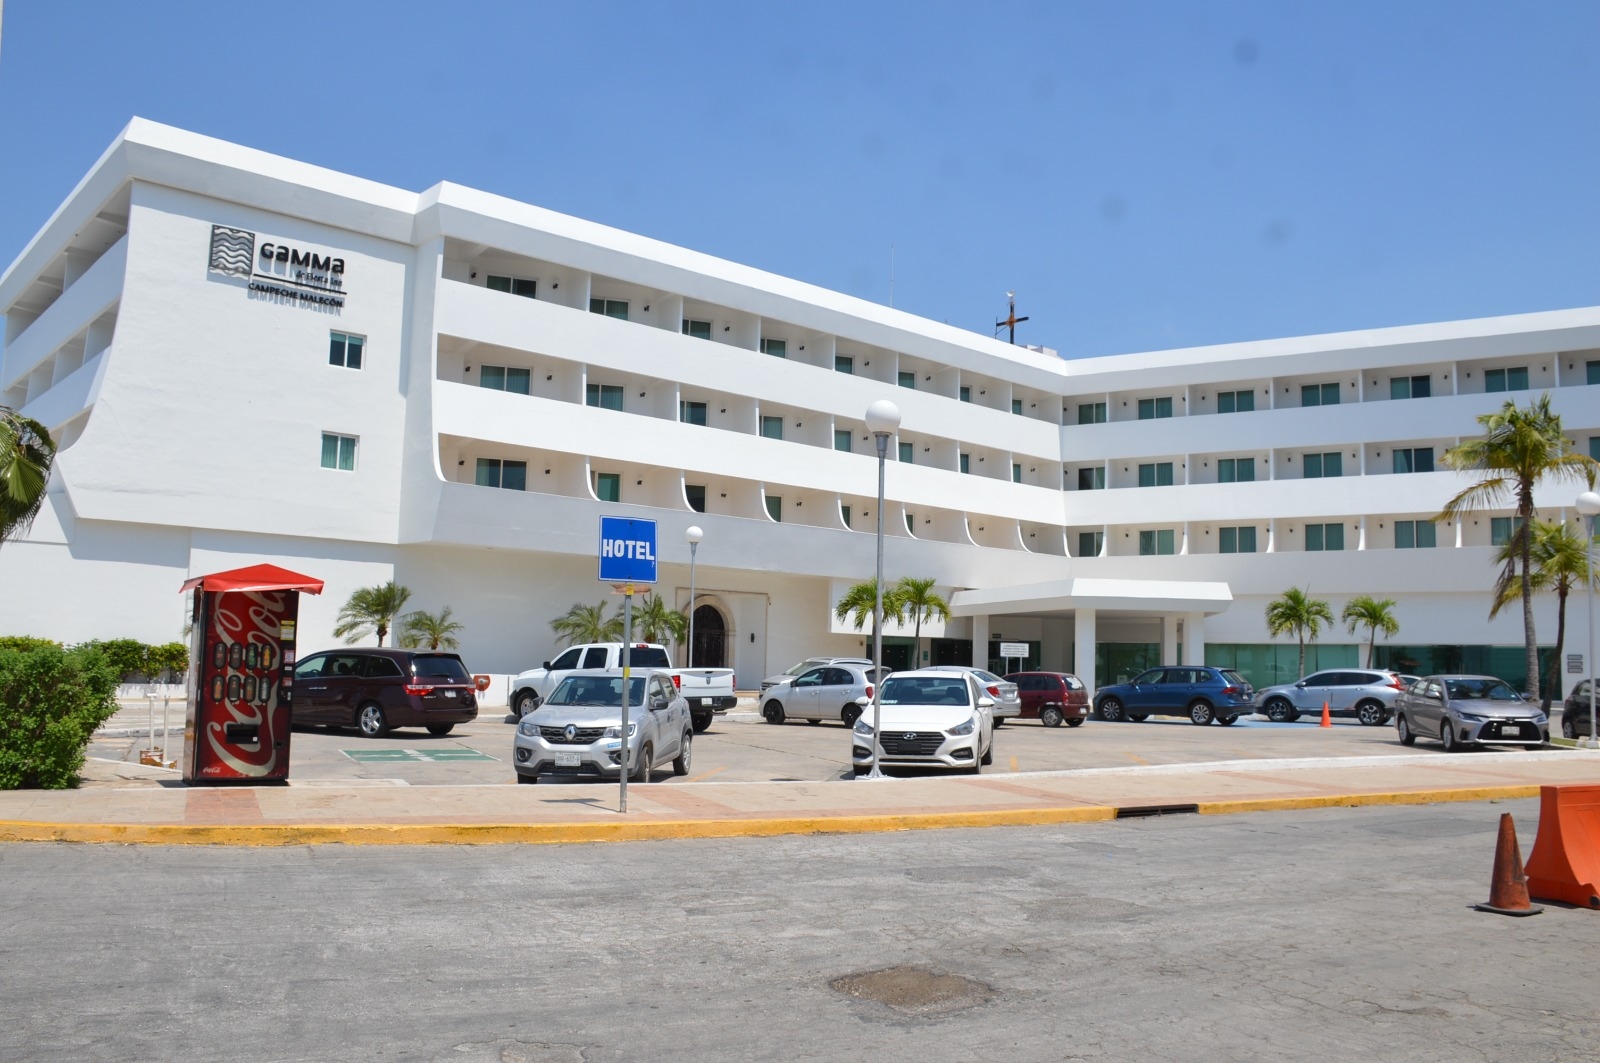 Hoteleros de Campeche pronostican aumento del 25% en la ocupación por Semana Santa